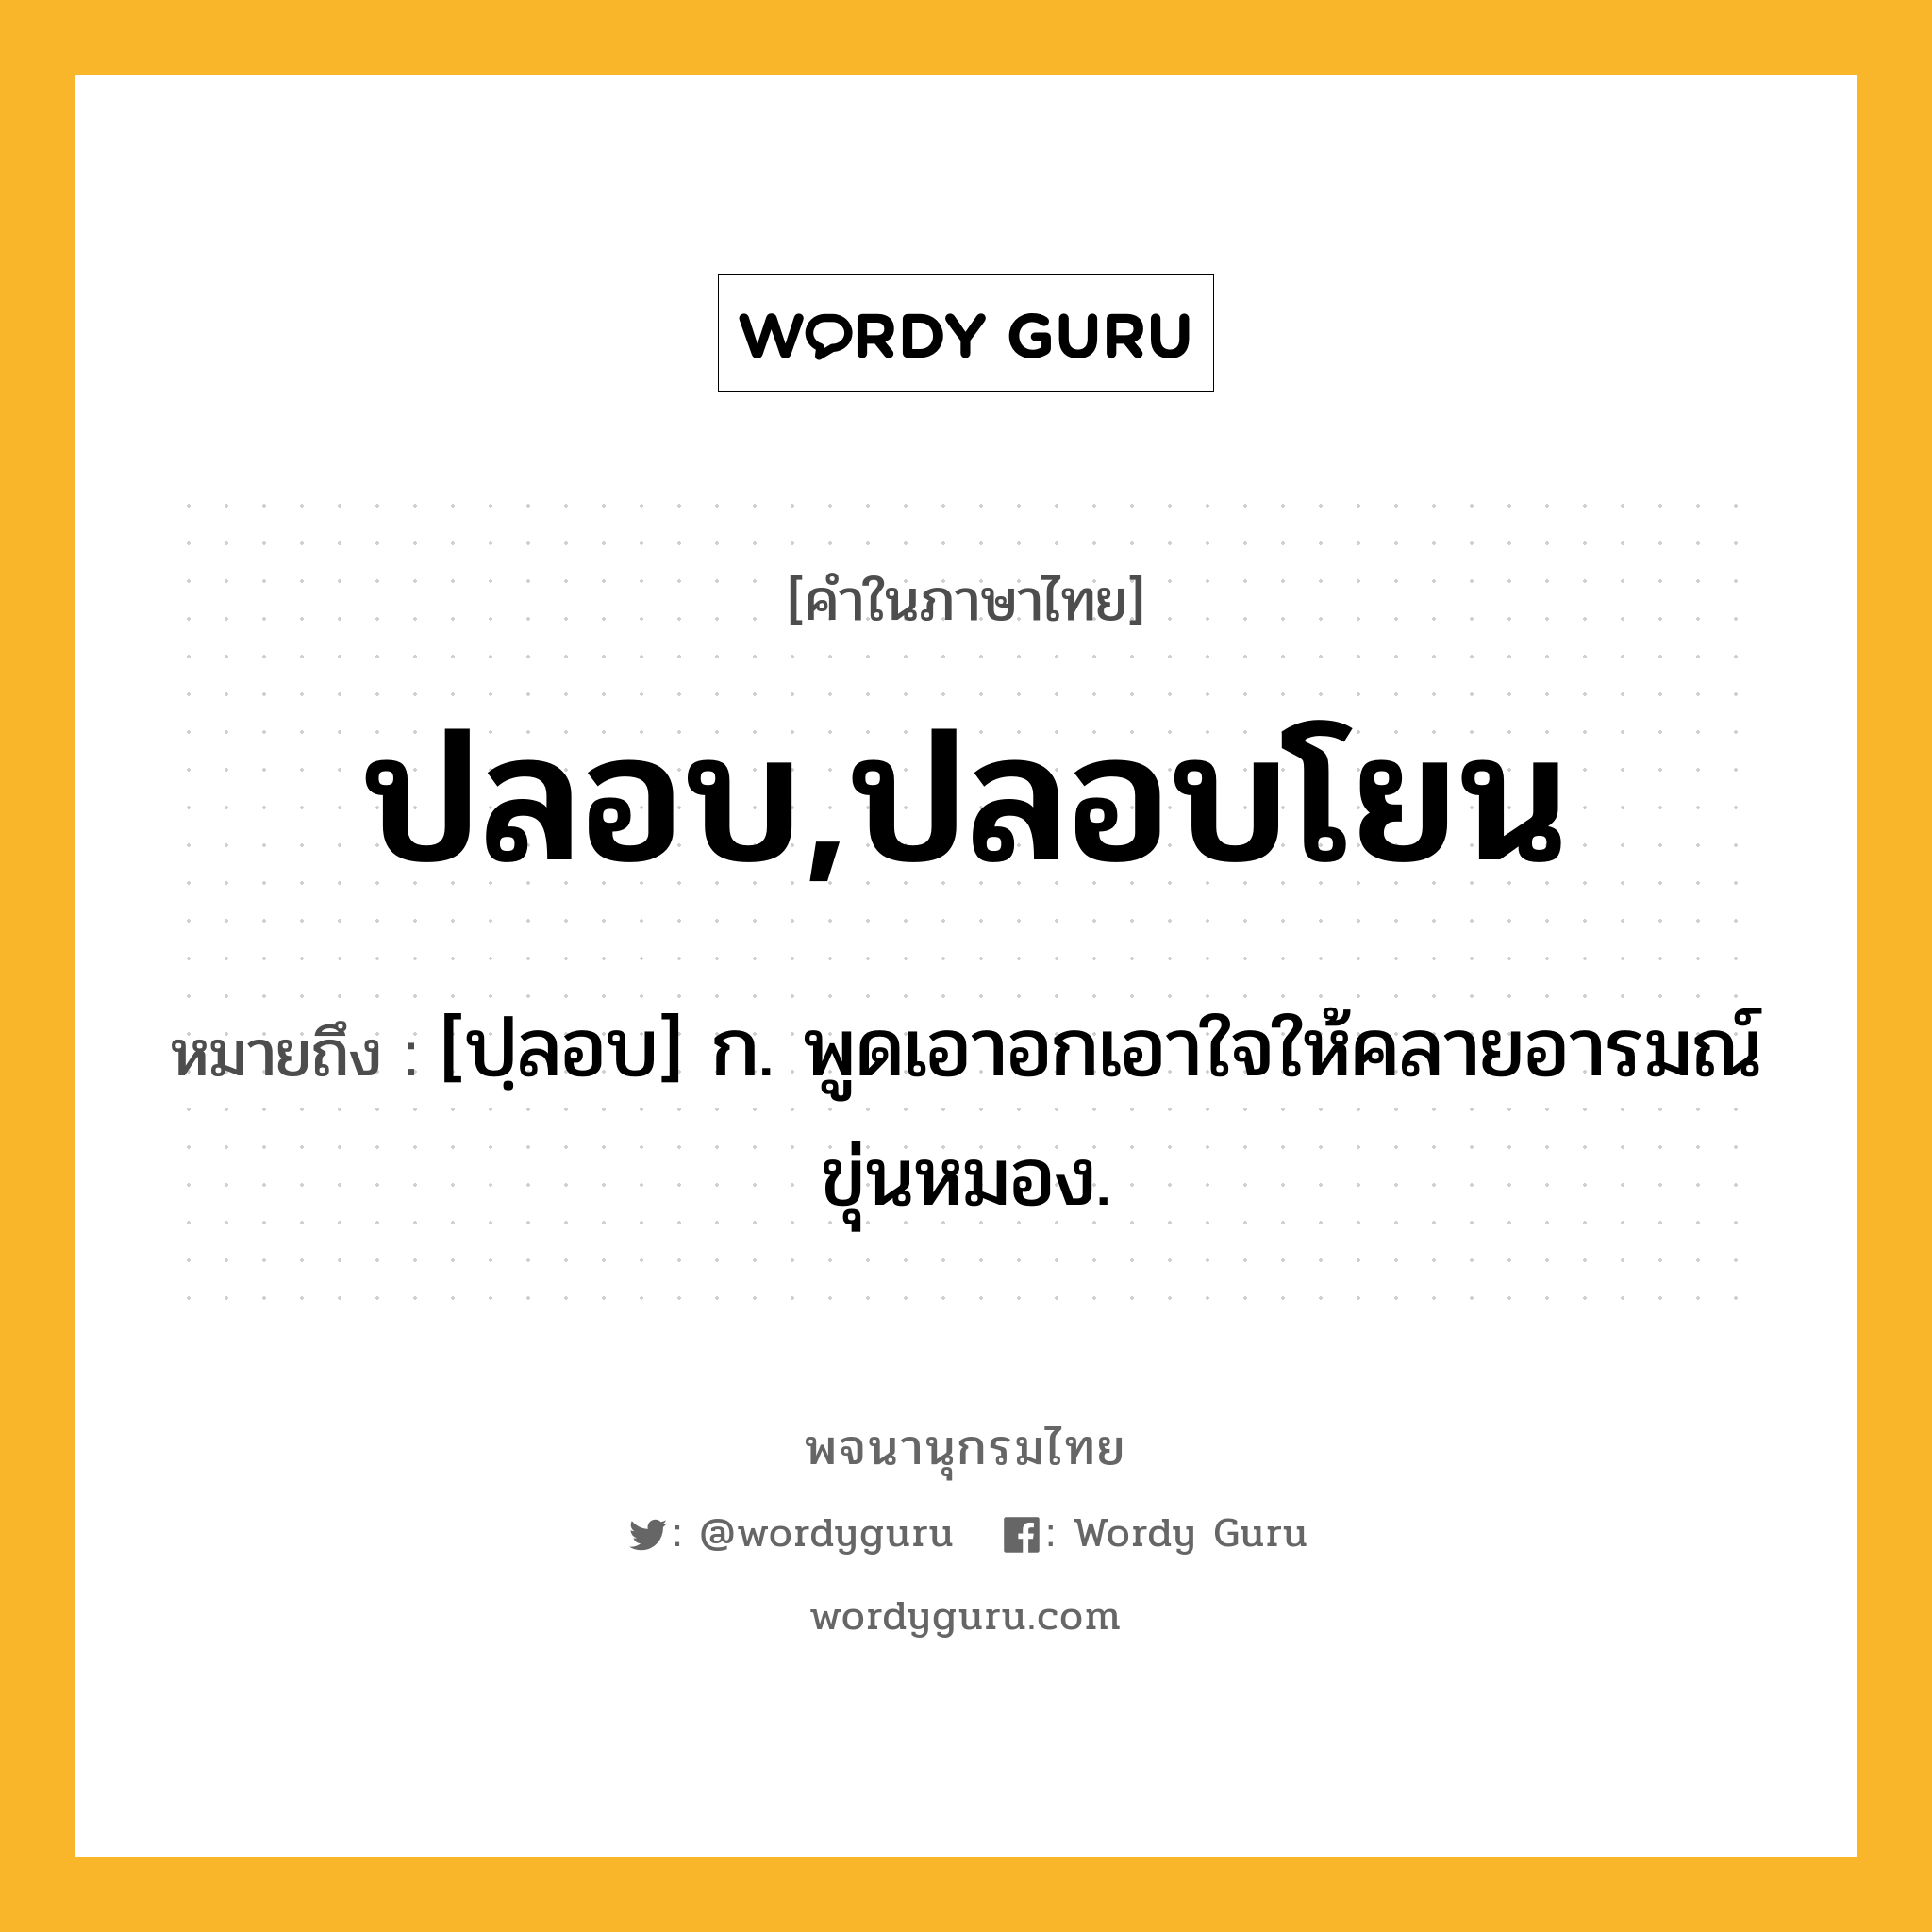 ปลอบ,ปลอบโยน ความหมาย หมายถึงอะไร?, คำในภาษาไทย ปลอบ,ปลอบโยน หมายถึง [ปฺลอบ] ก. พูดเอาอกเอาใจให้คลายอารมณ์ขุ่นหมอง.